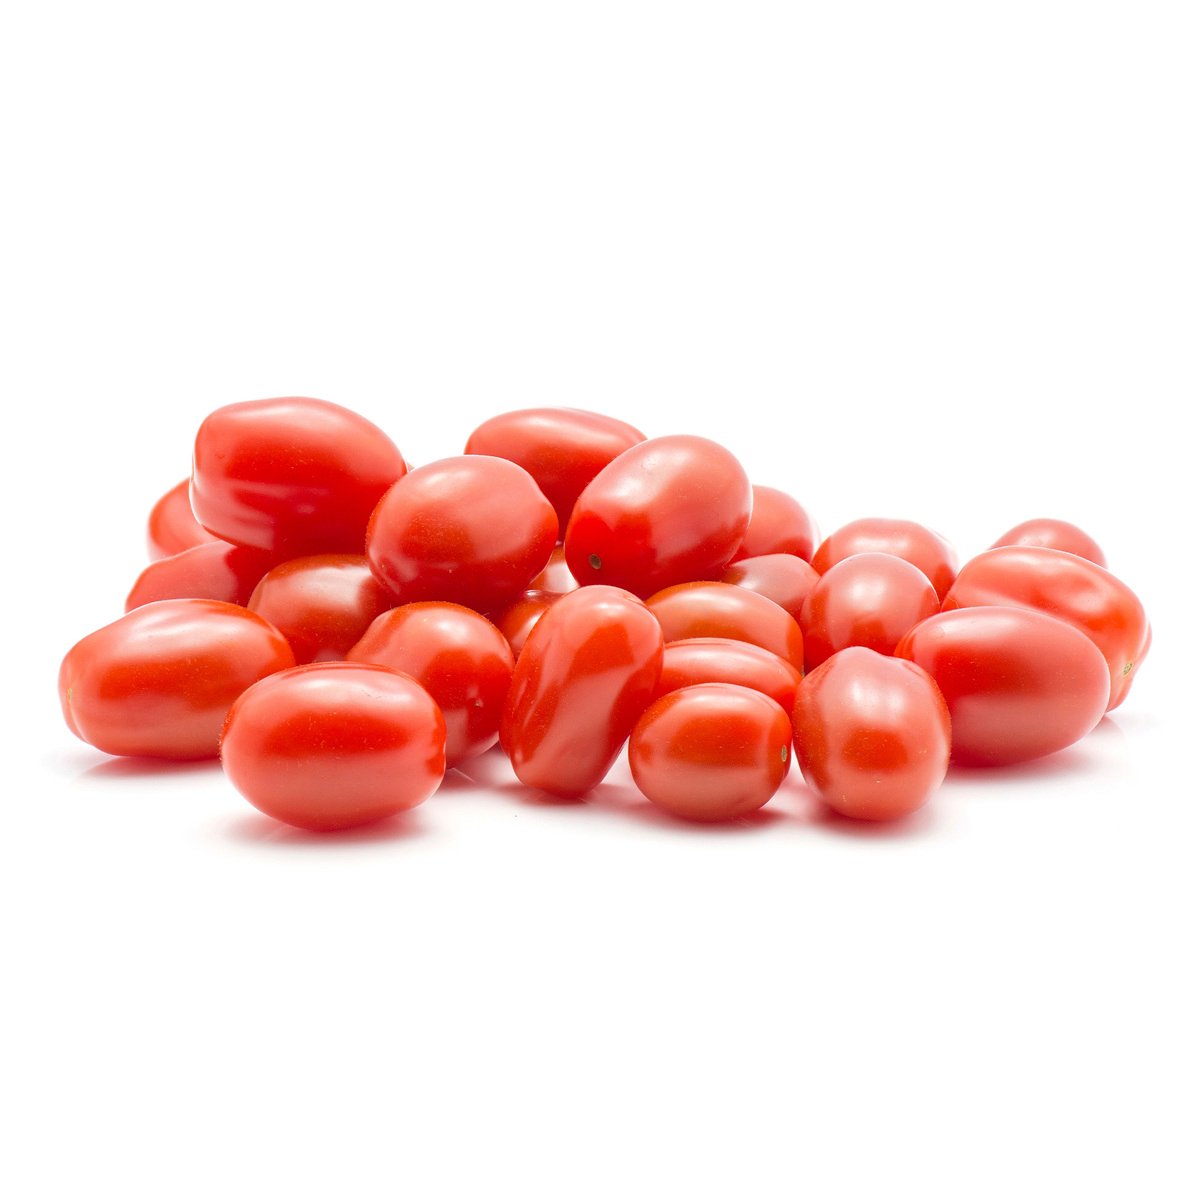 طماطم كرزية عضوية قطرية 250 جم وزن تقريبي